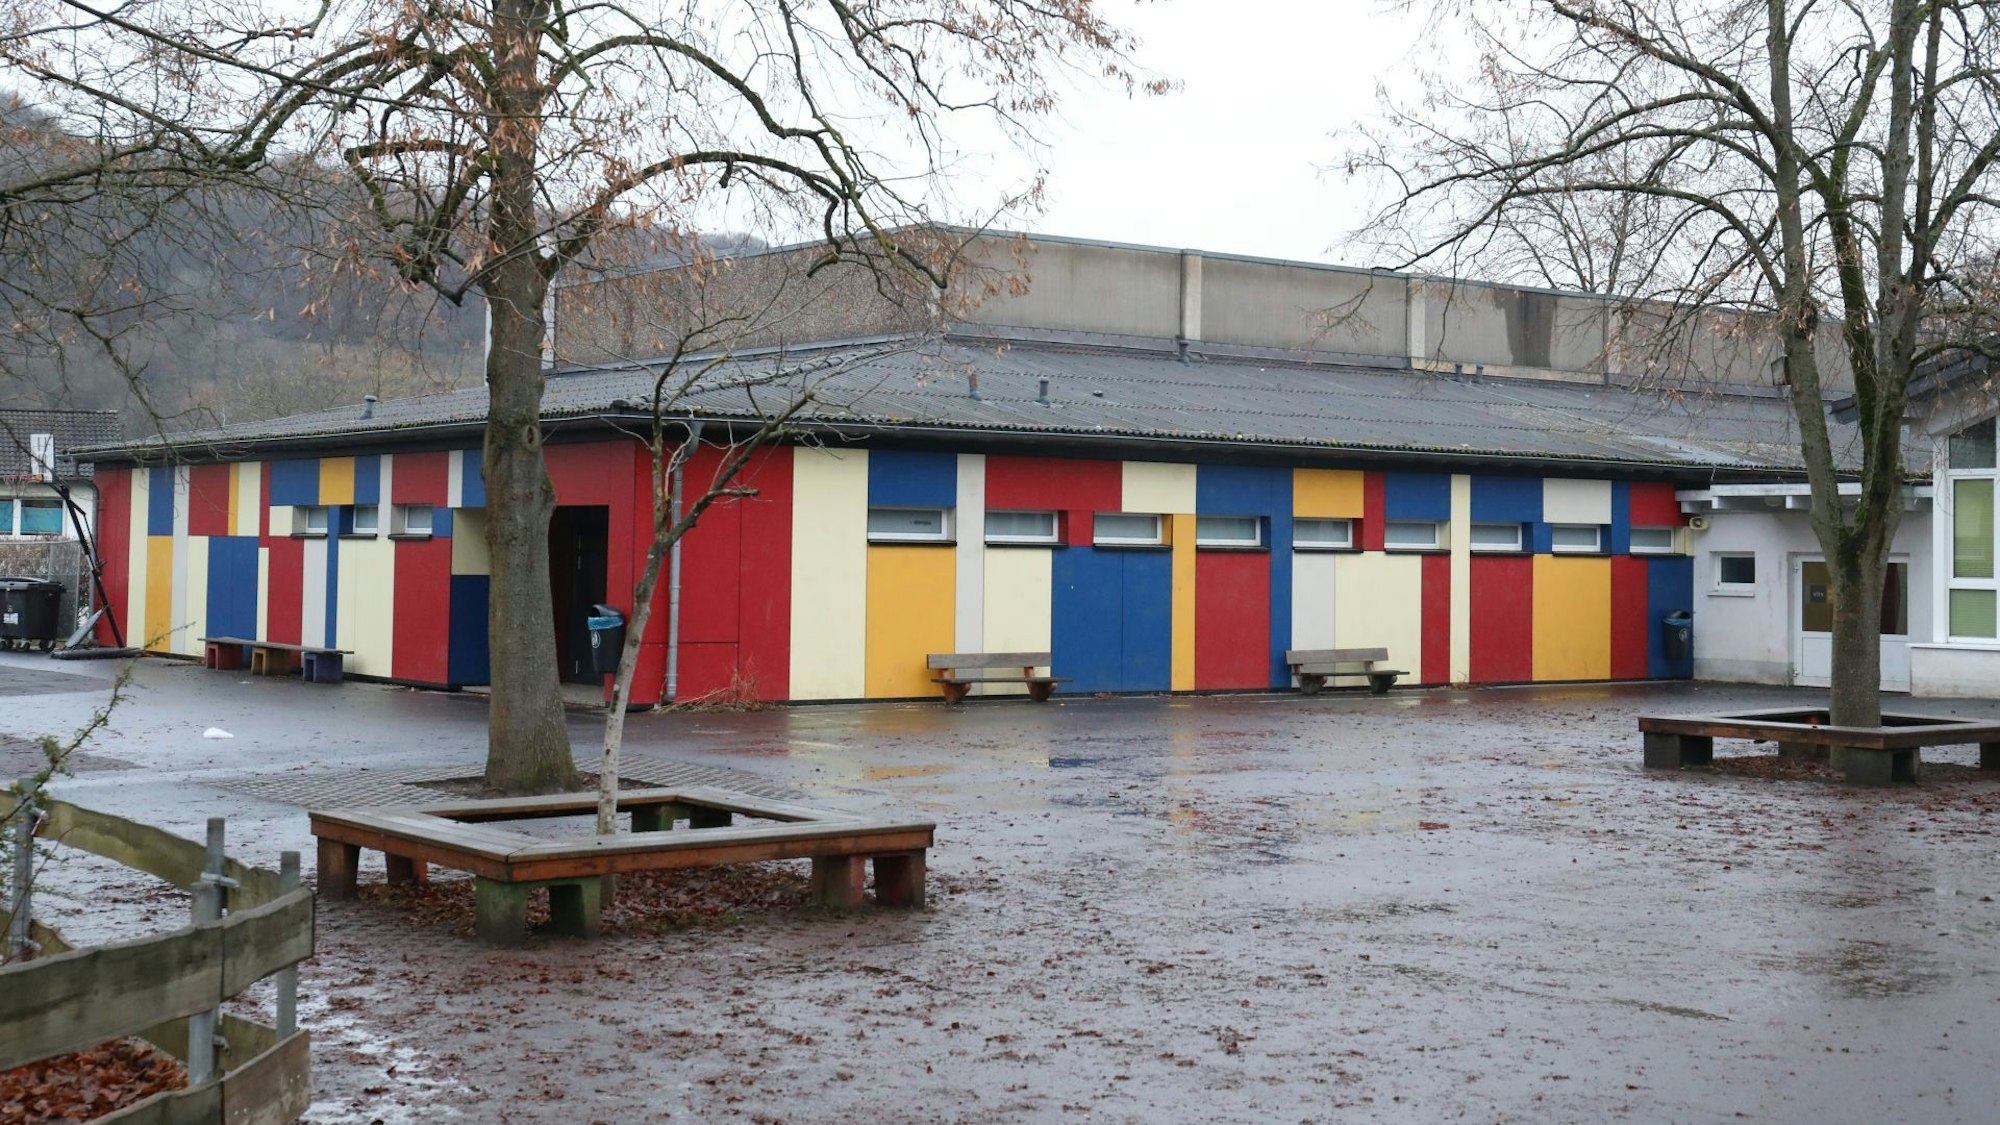 Die Turnhalle der Grundschule Oberdollendorf hat eine bunte Fassade in den Farben Rot, Gelb, Blau und Beige.